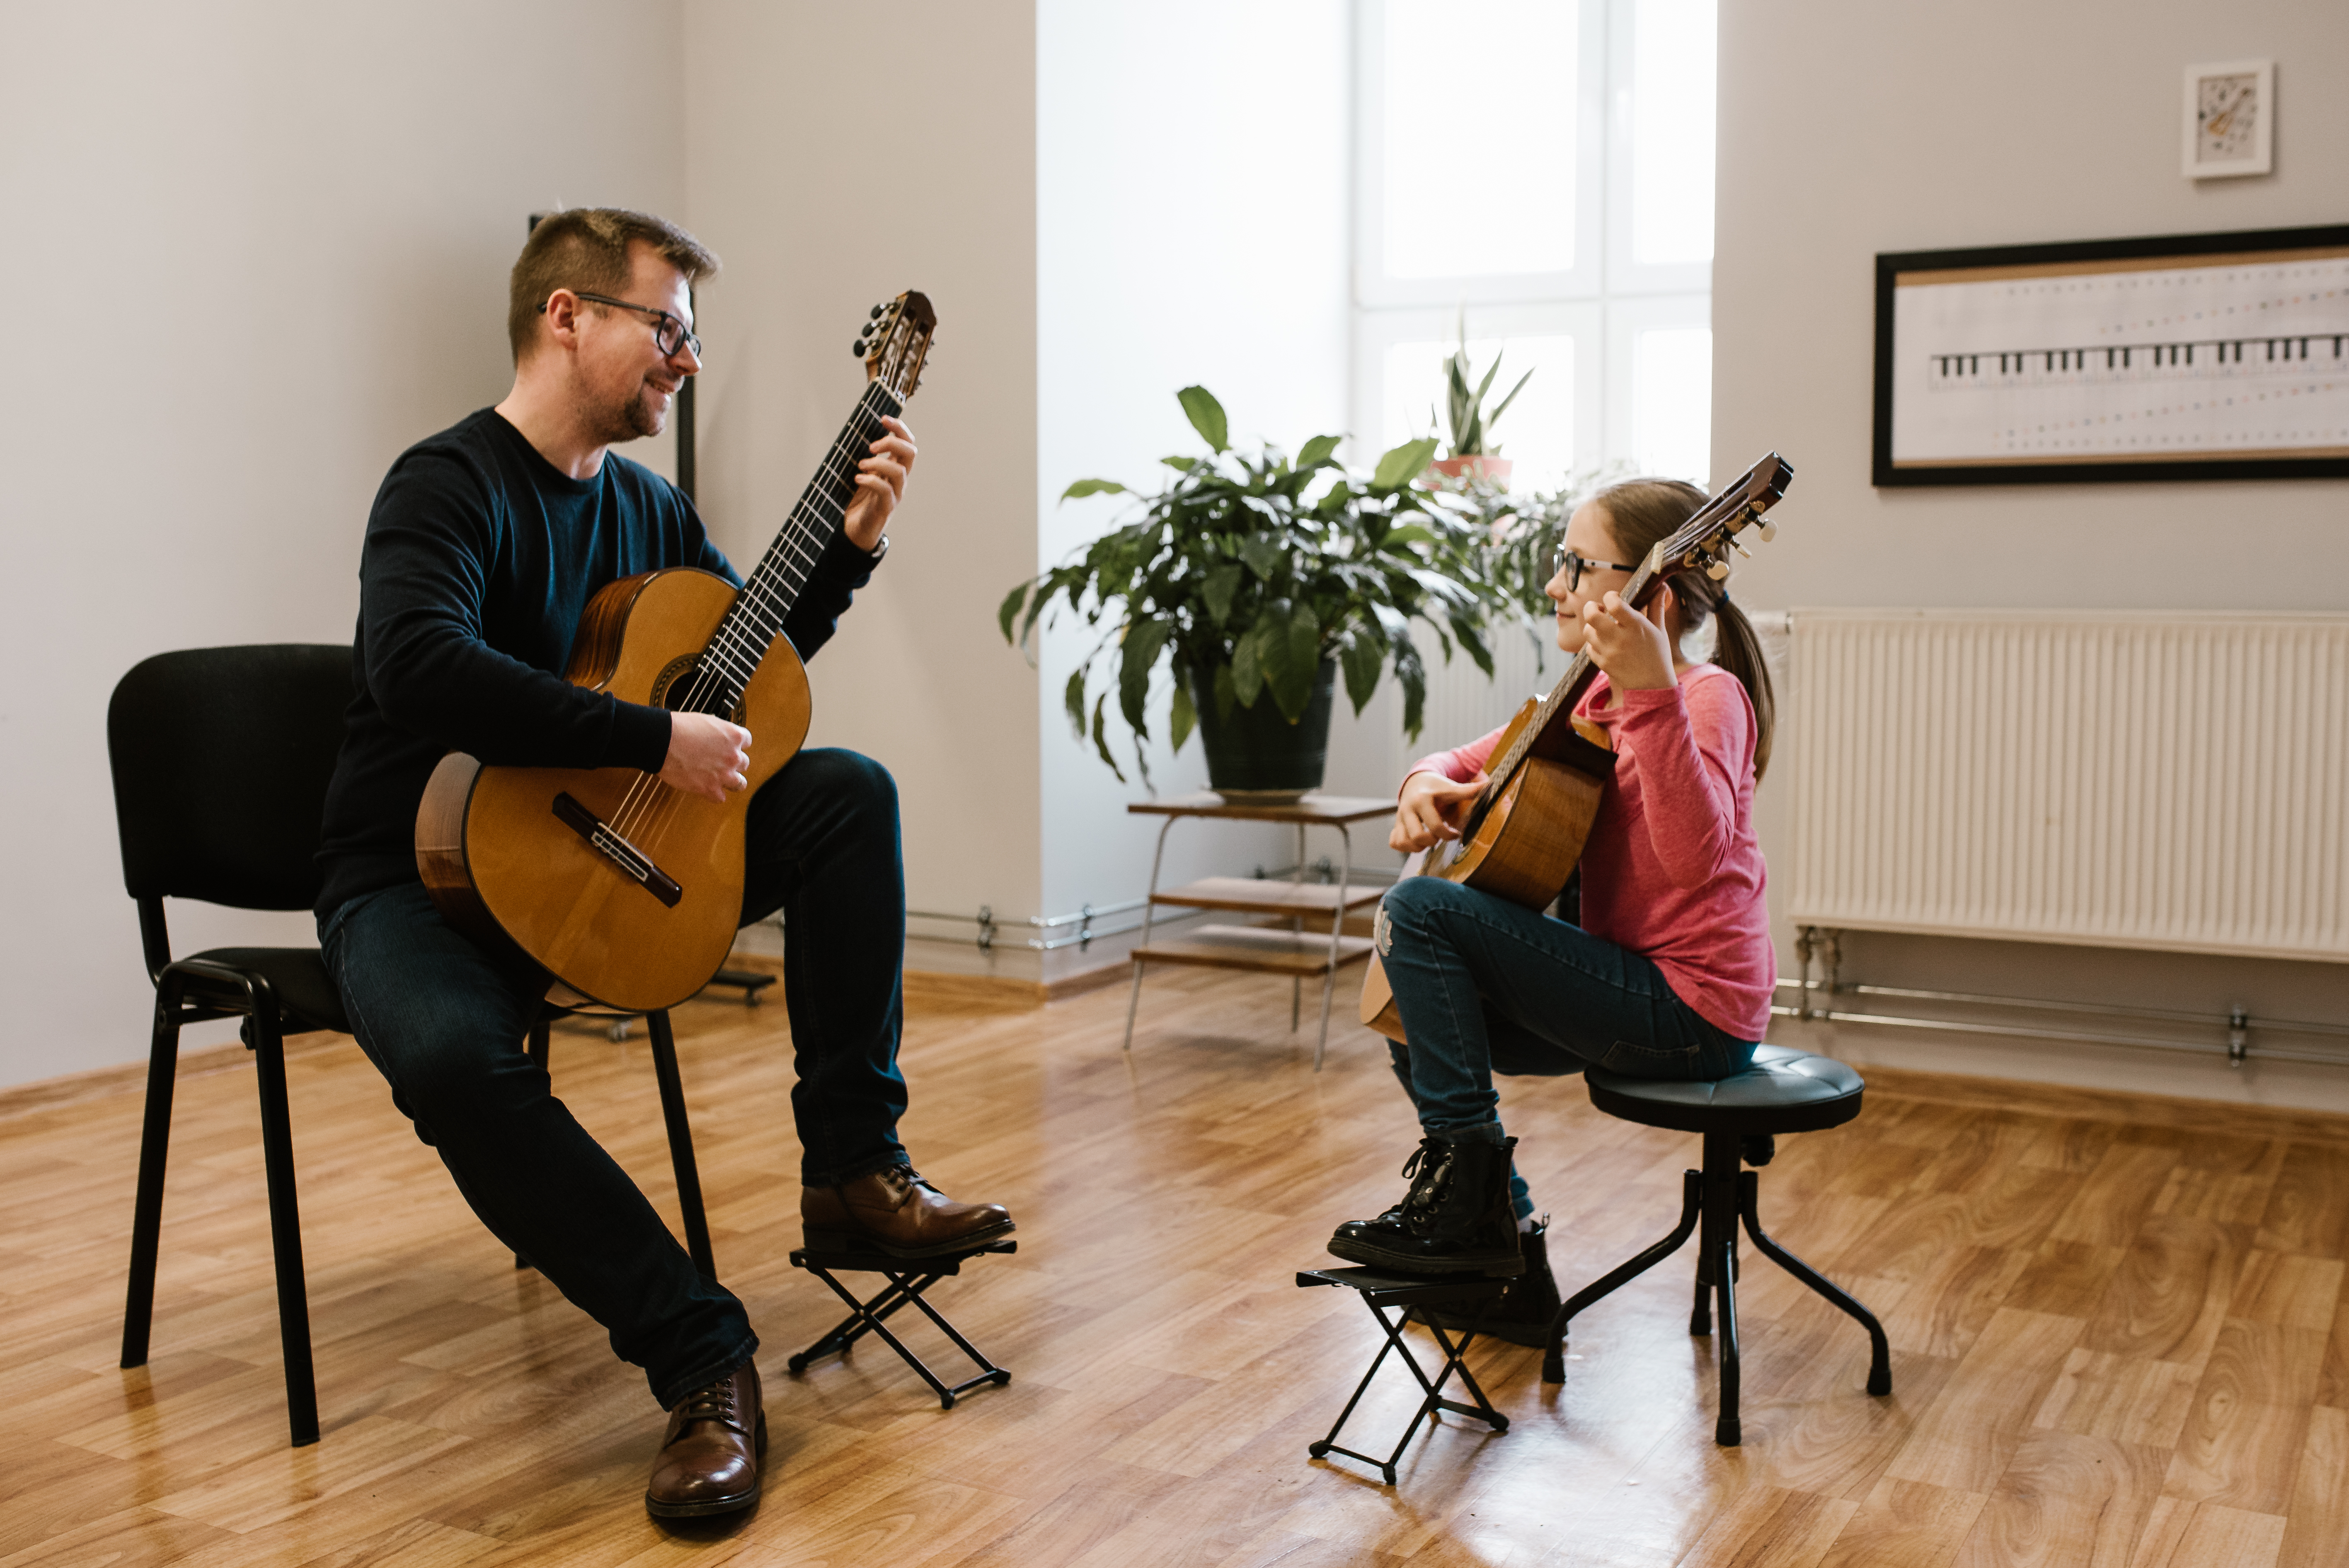 Na zdjęciu znajduje się nauczyciel Łukasz FIgiel oraz uczennica Oliwia Kasprzyszak grający na gitarach. W tle znajduje się zielona roślina, na ścianie wisi meloplast w czarnej ramce. 